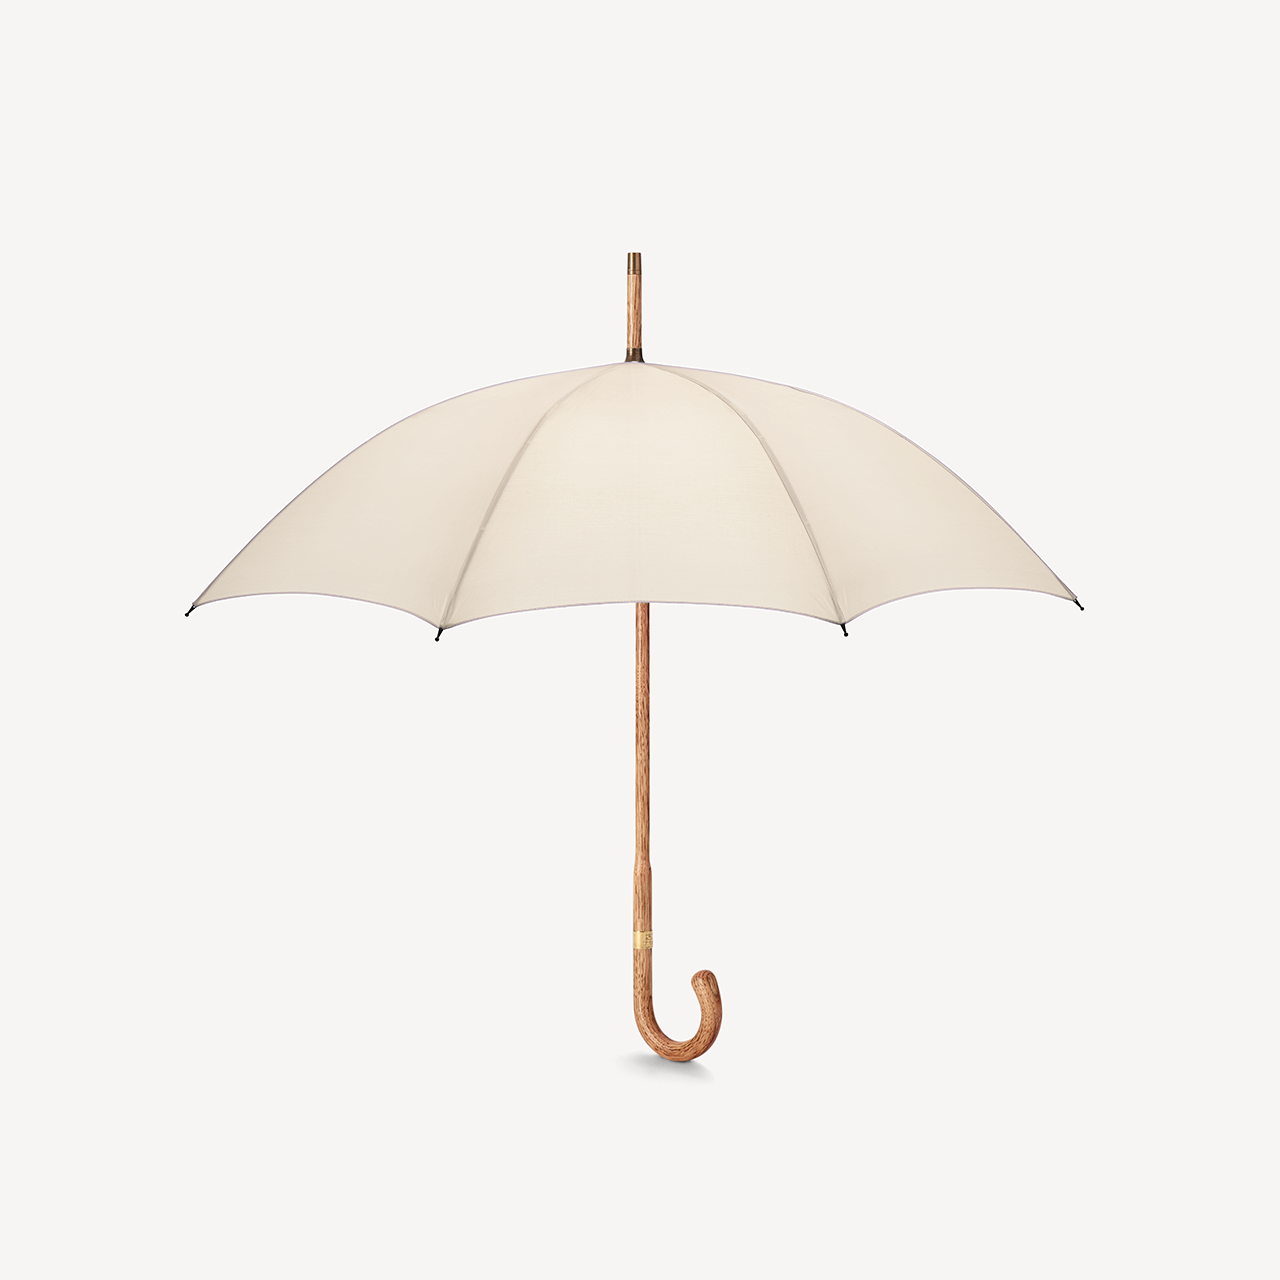 Hickory Umbrella for Women